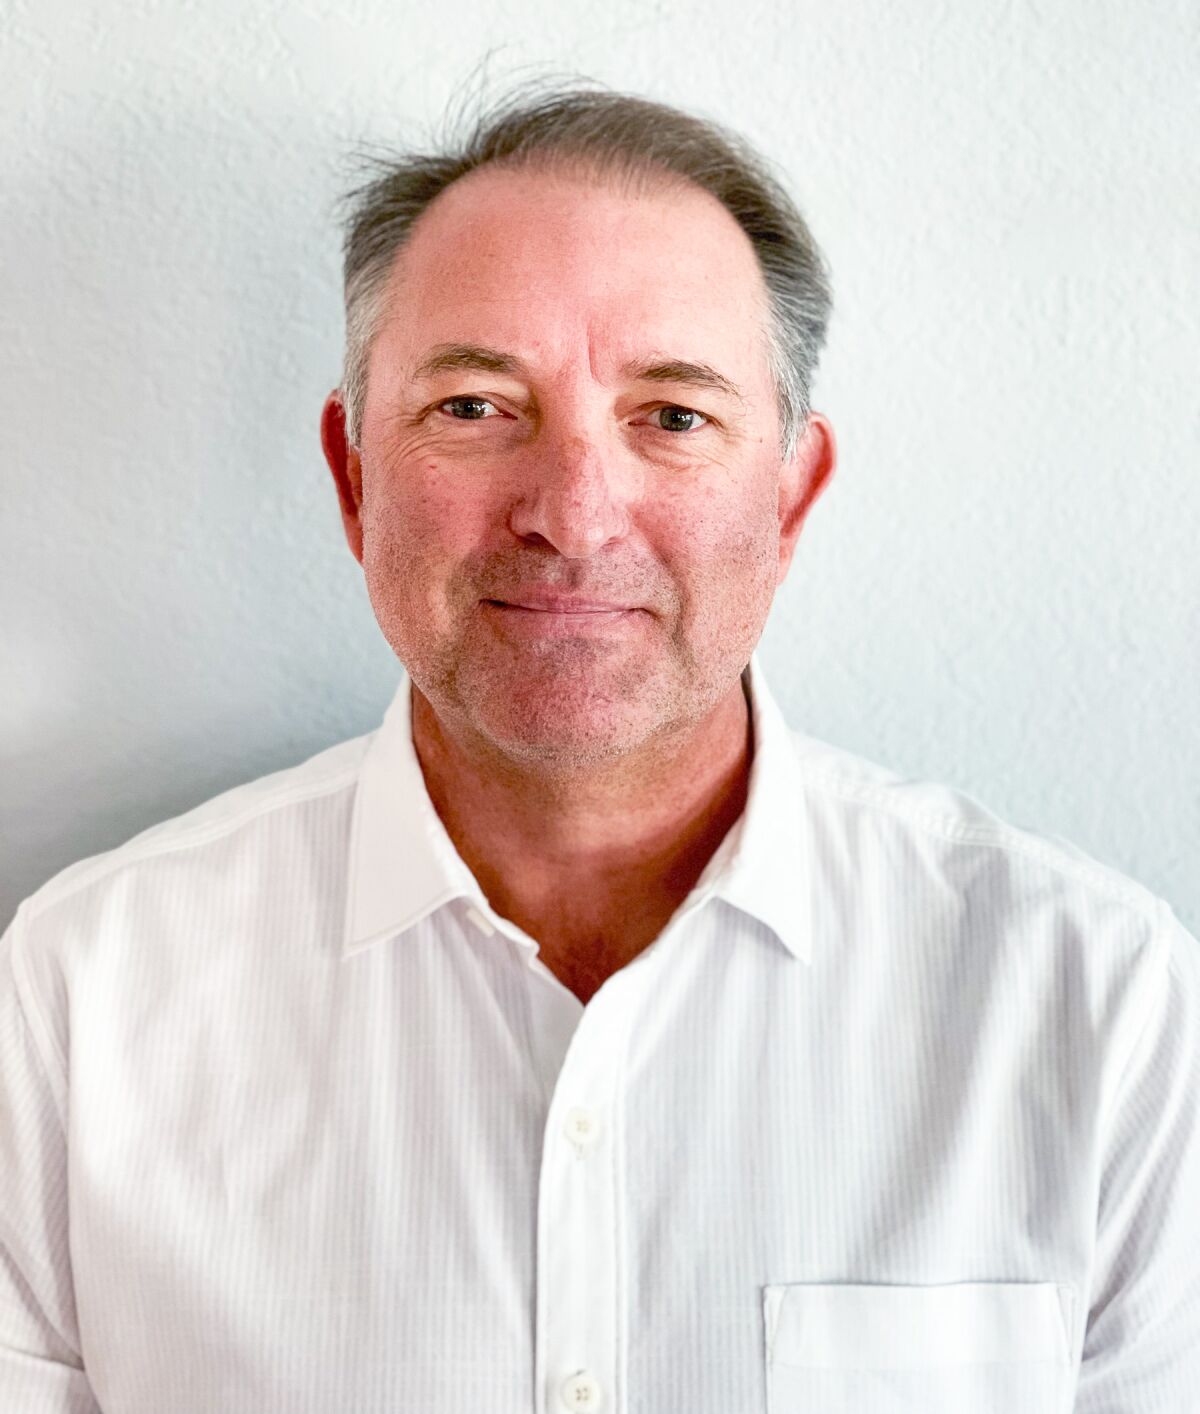 Chris Hazeltine, Poway's city manager